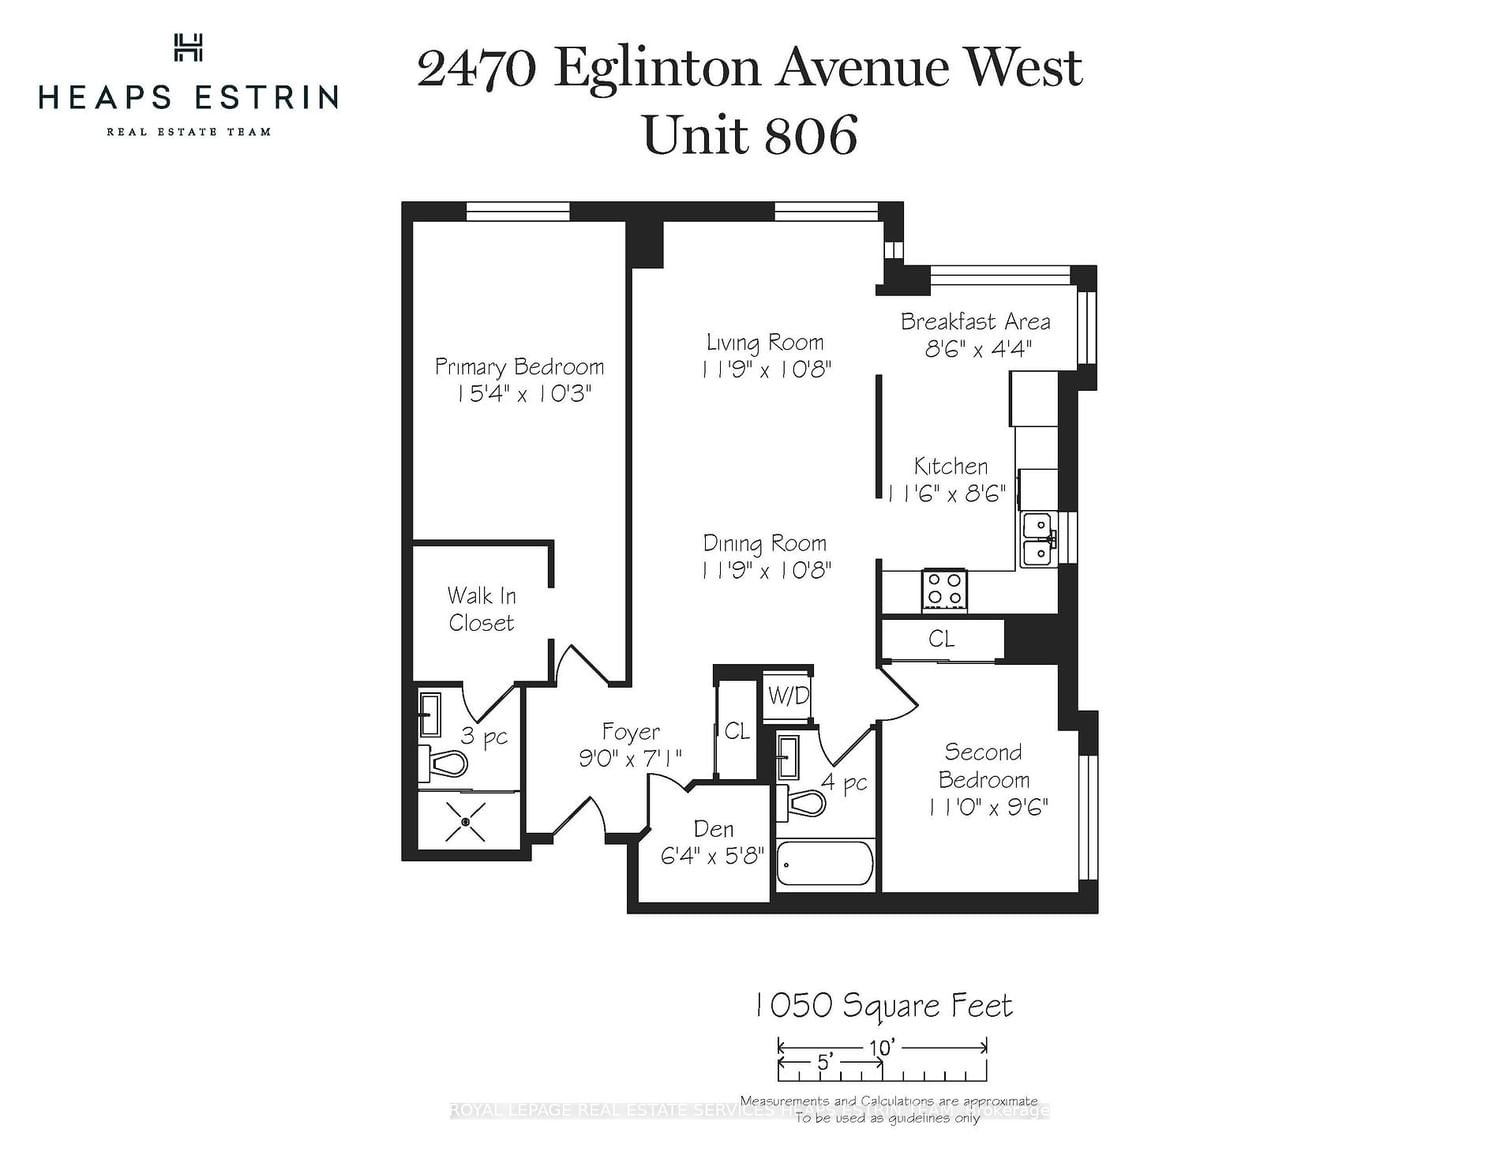 2470 Eglinton Ave W, unit 806 for sale - image #35